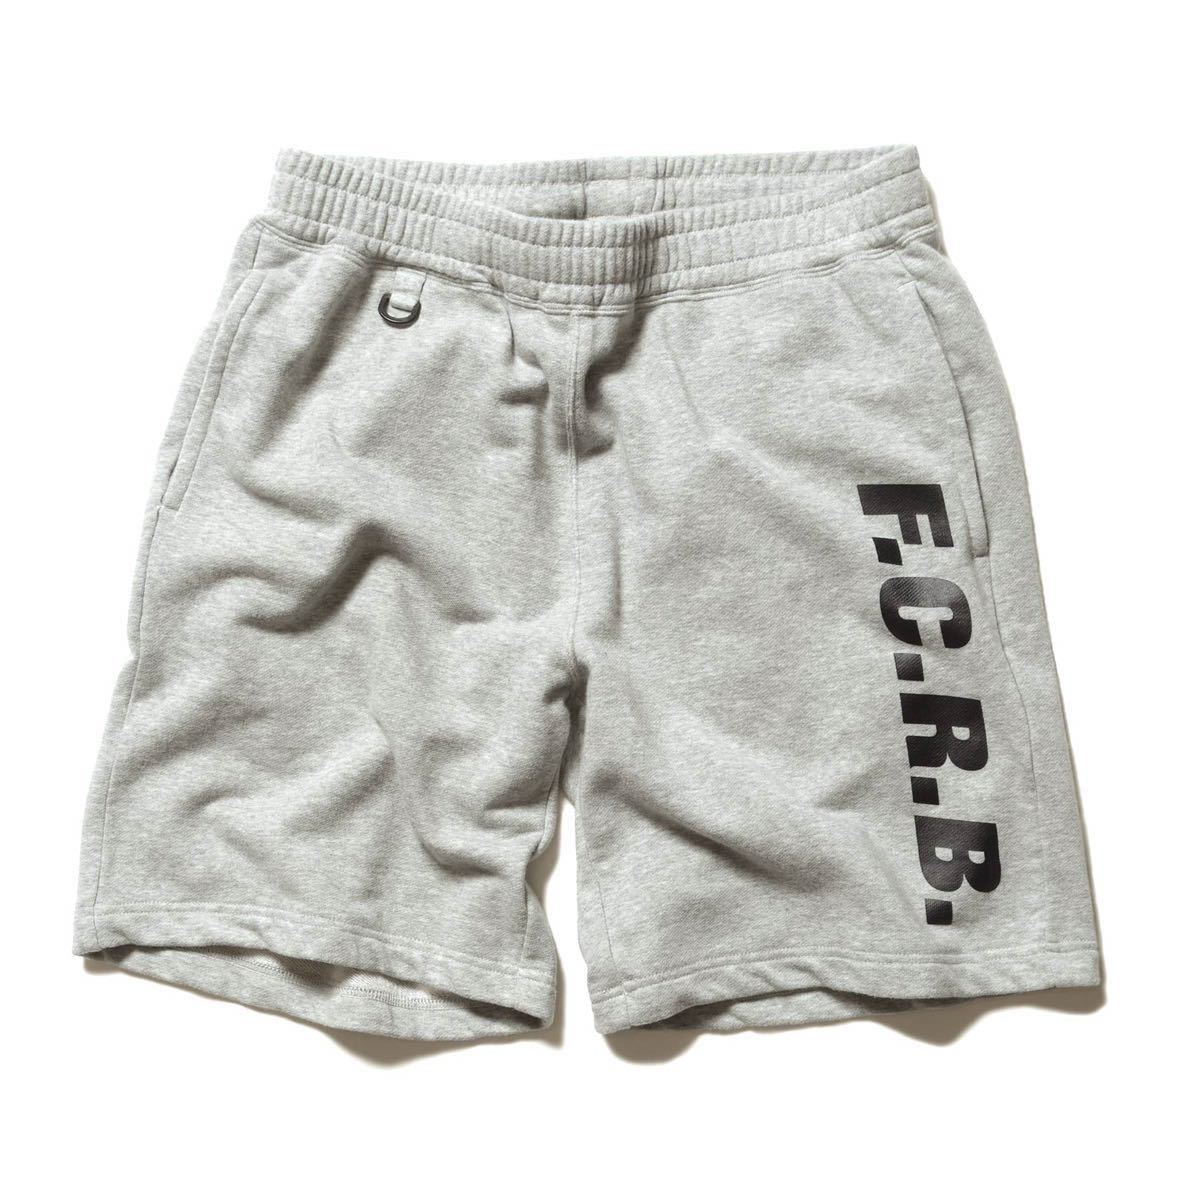 ヤフオク! -fcrb sweat shorts(ファッション)の中古品・新品・古着一覧